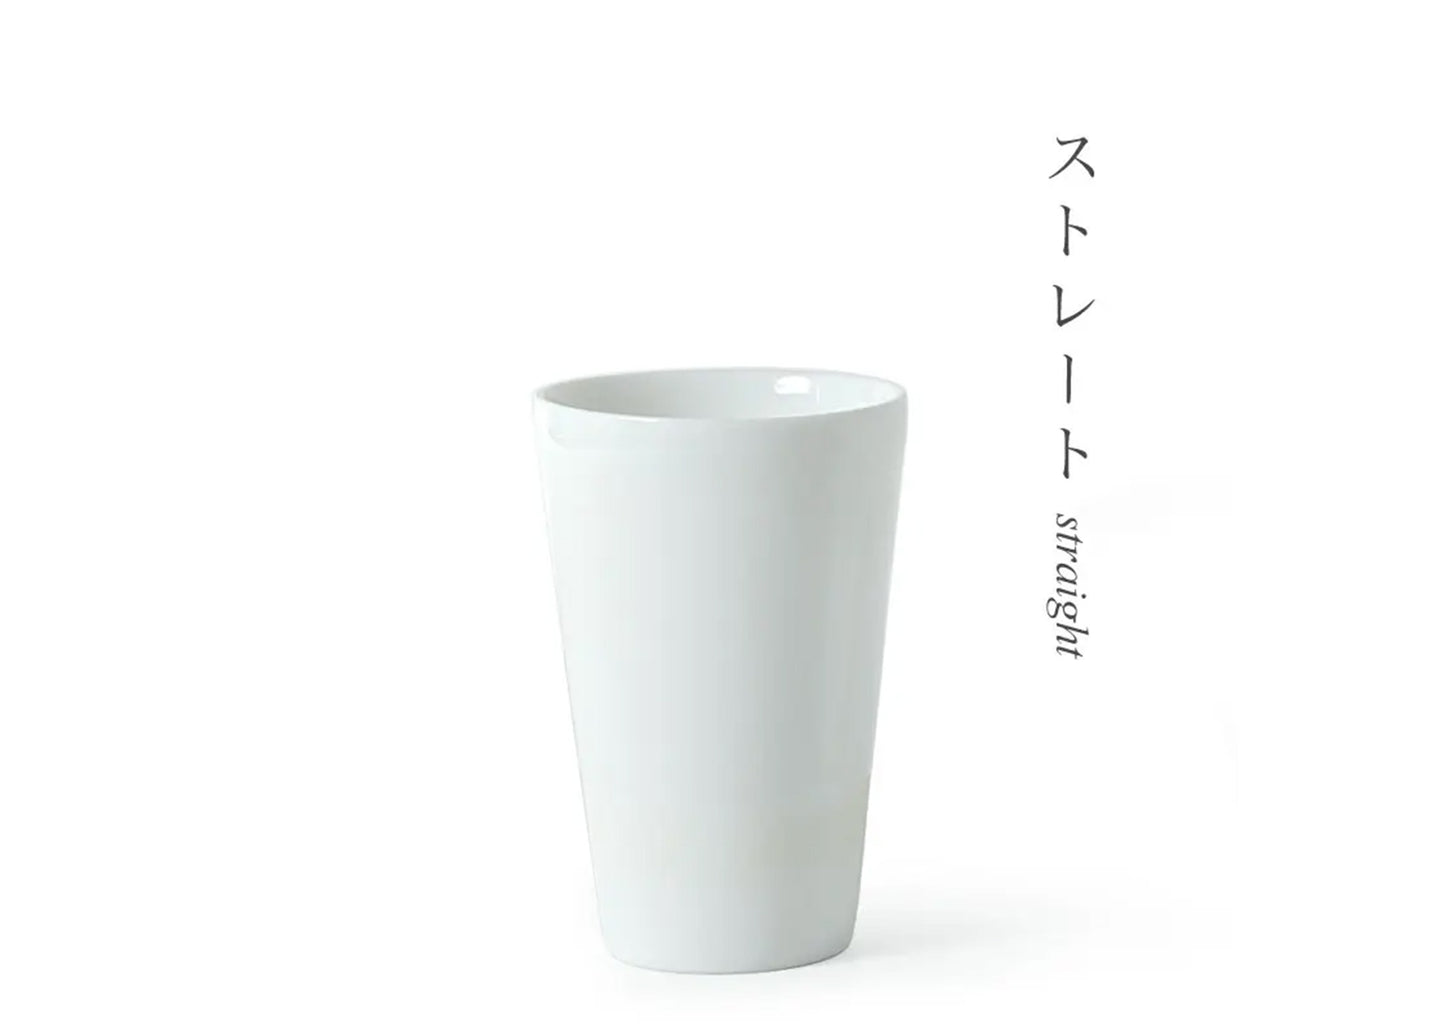 
                  
                    Sake Cup Tasting Set by Miya
                  
                